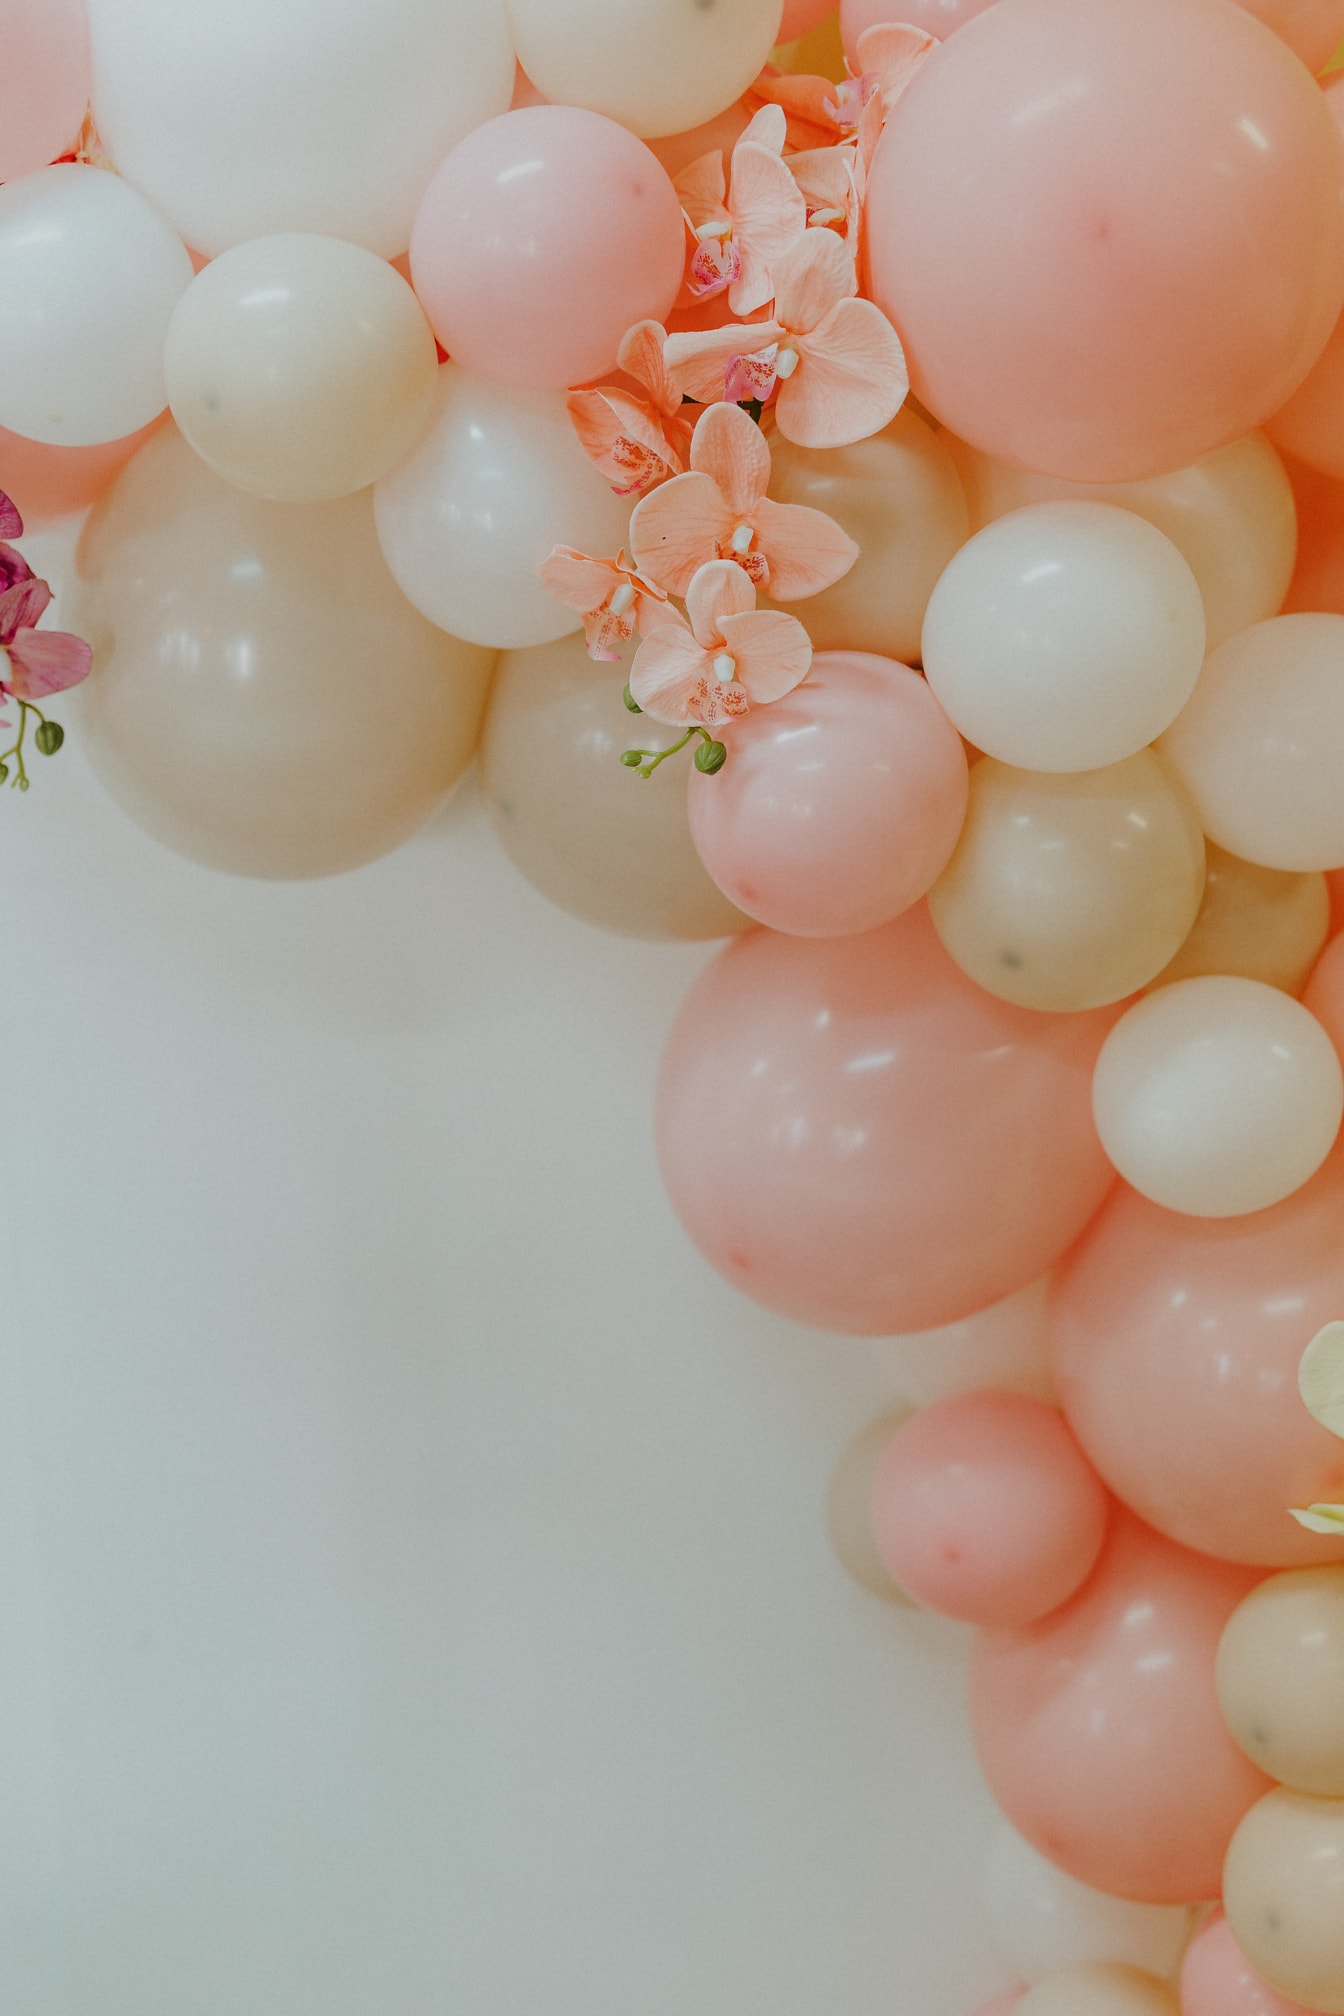 Ballon jaunâtre et rosé décoration élégante avec des fleurs d’orchidées